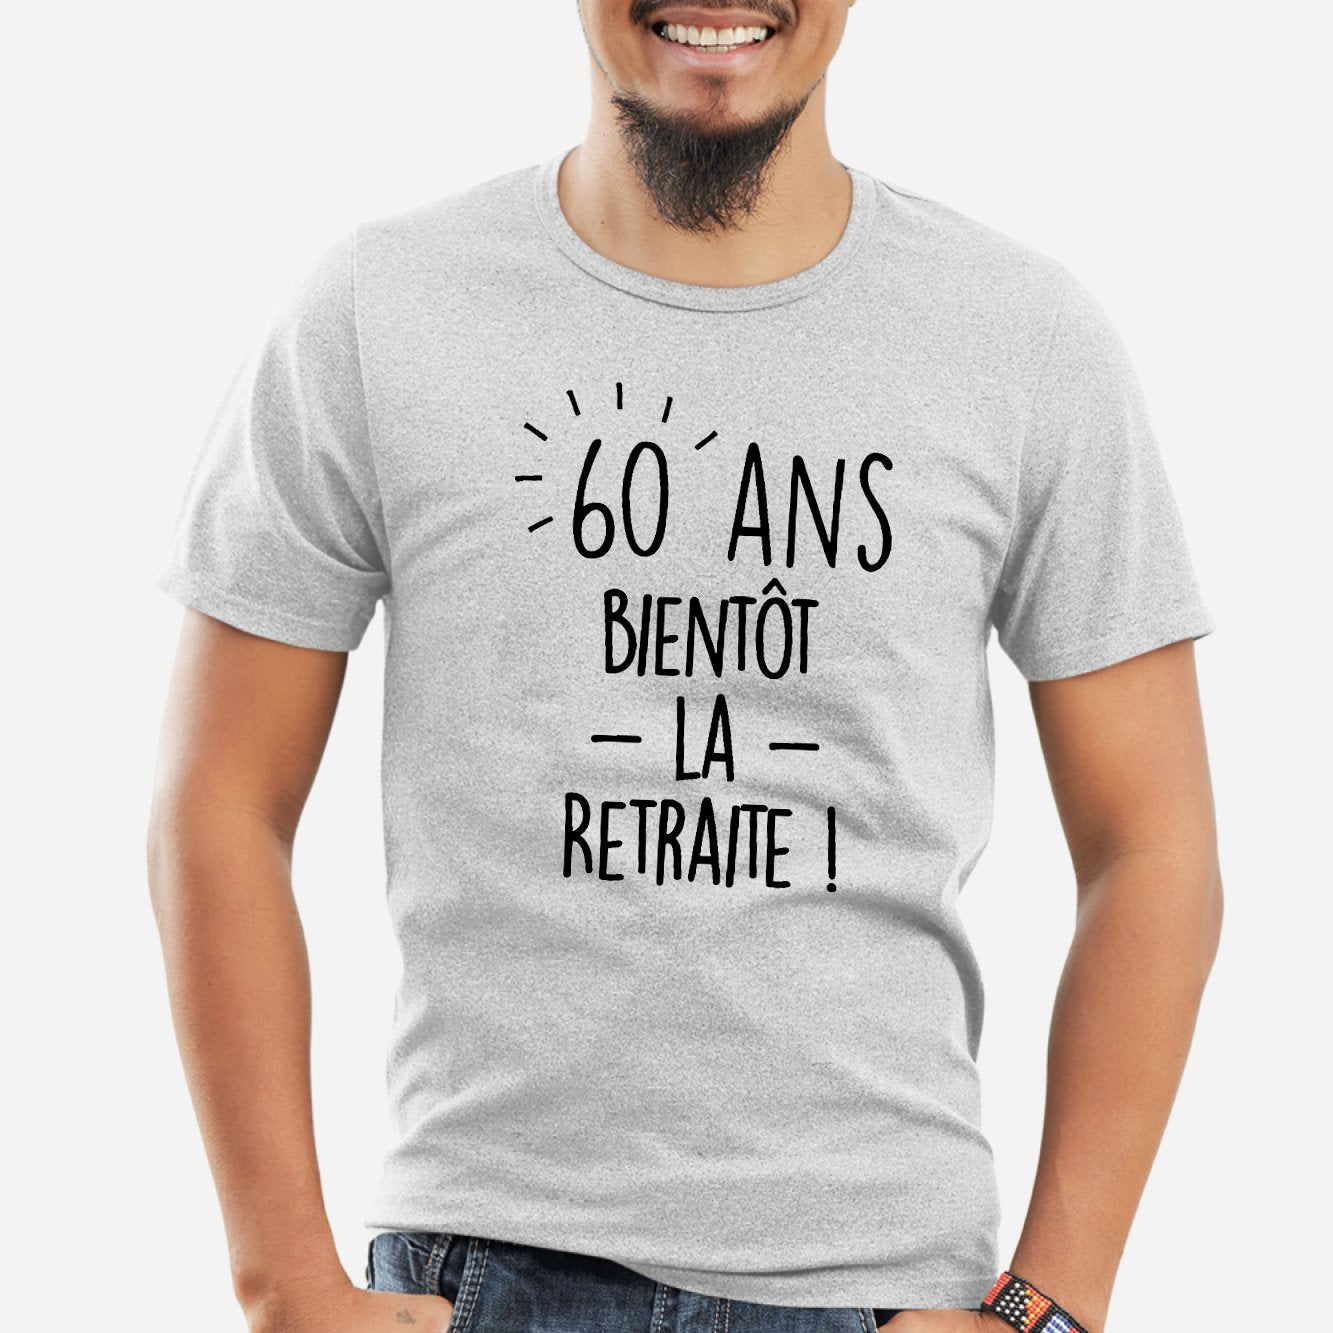 Tee-shirt 60 ans Humoristique Femme anniversaire